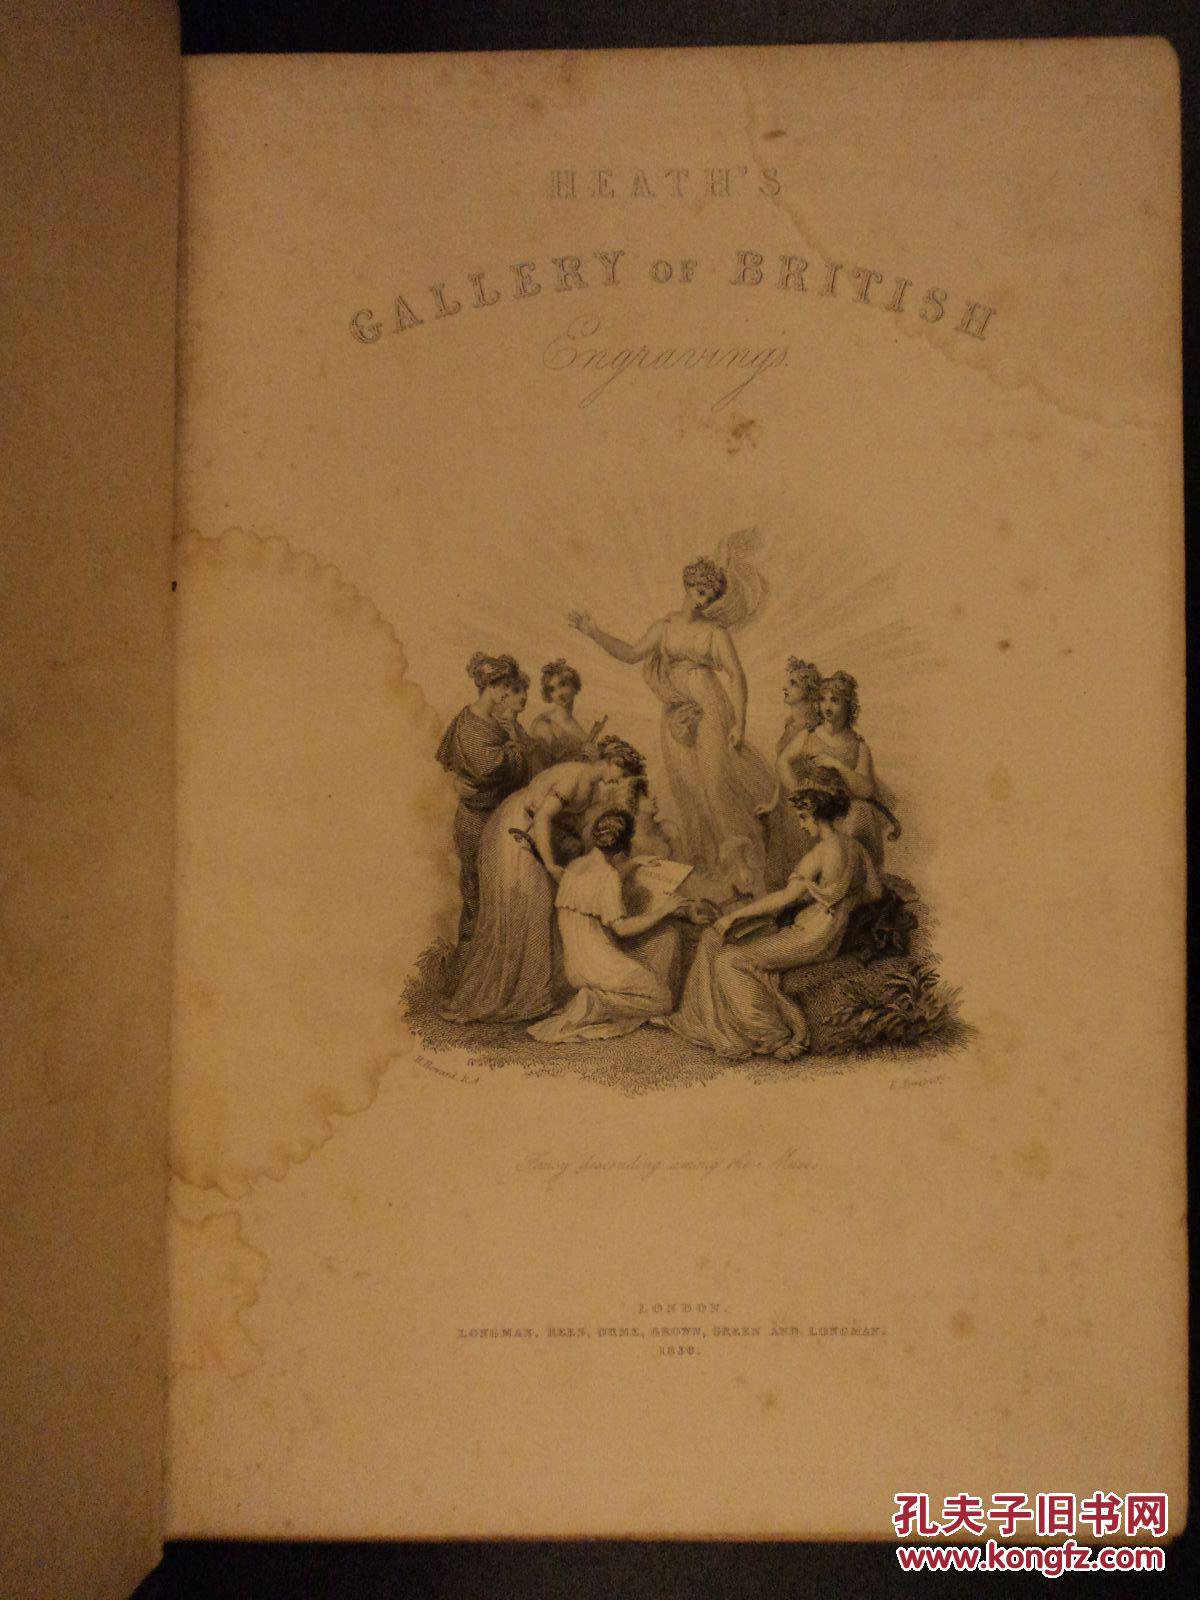 《查尔斯·希思的英国画廊》 》55幅钢板画插图，1836年出版  精装 24cm x 18cm